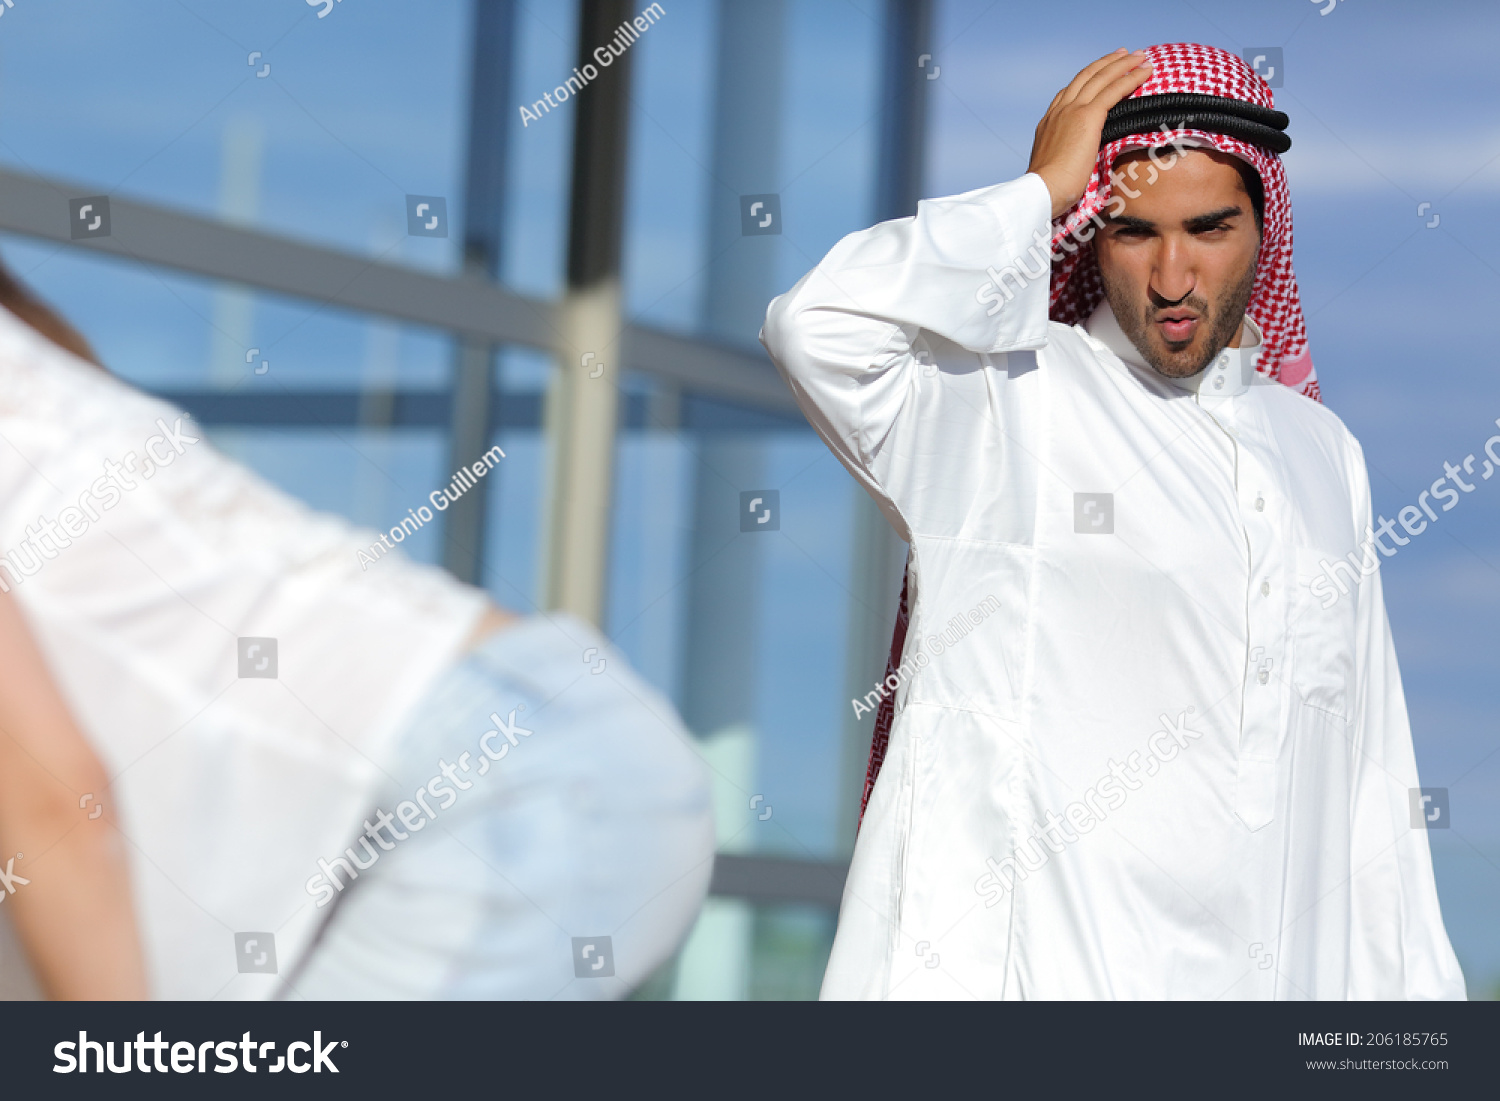 Arab Huge Ass